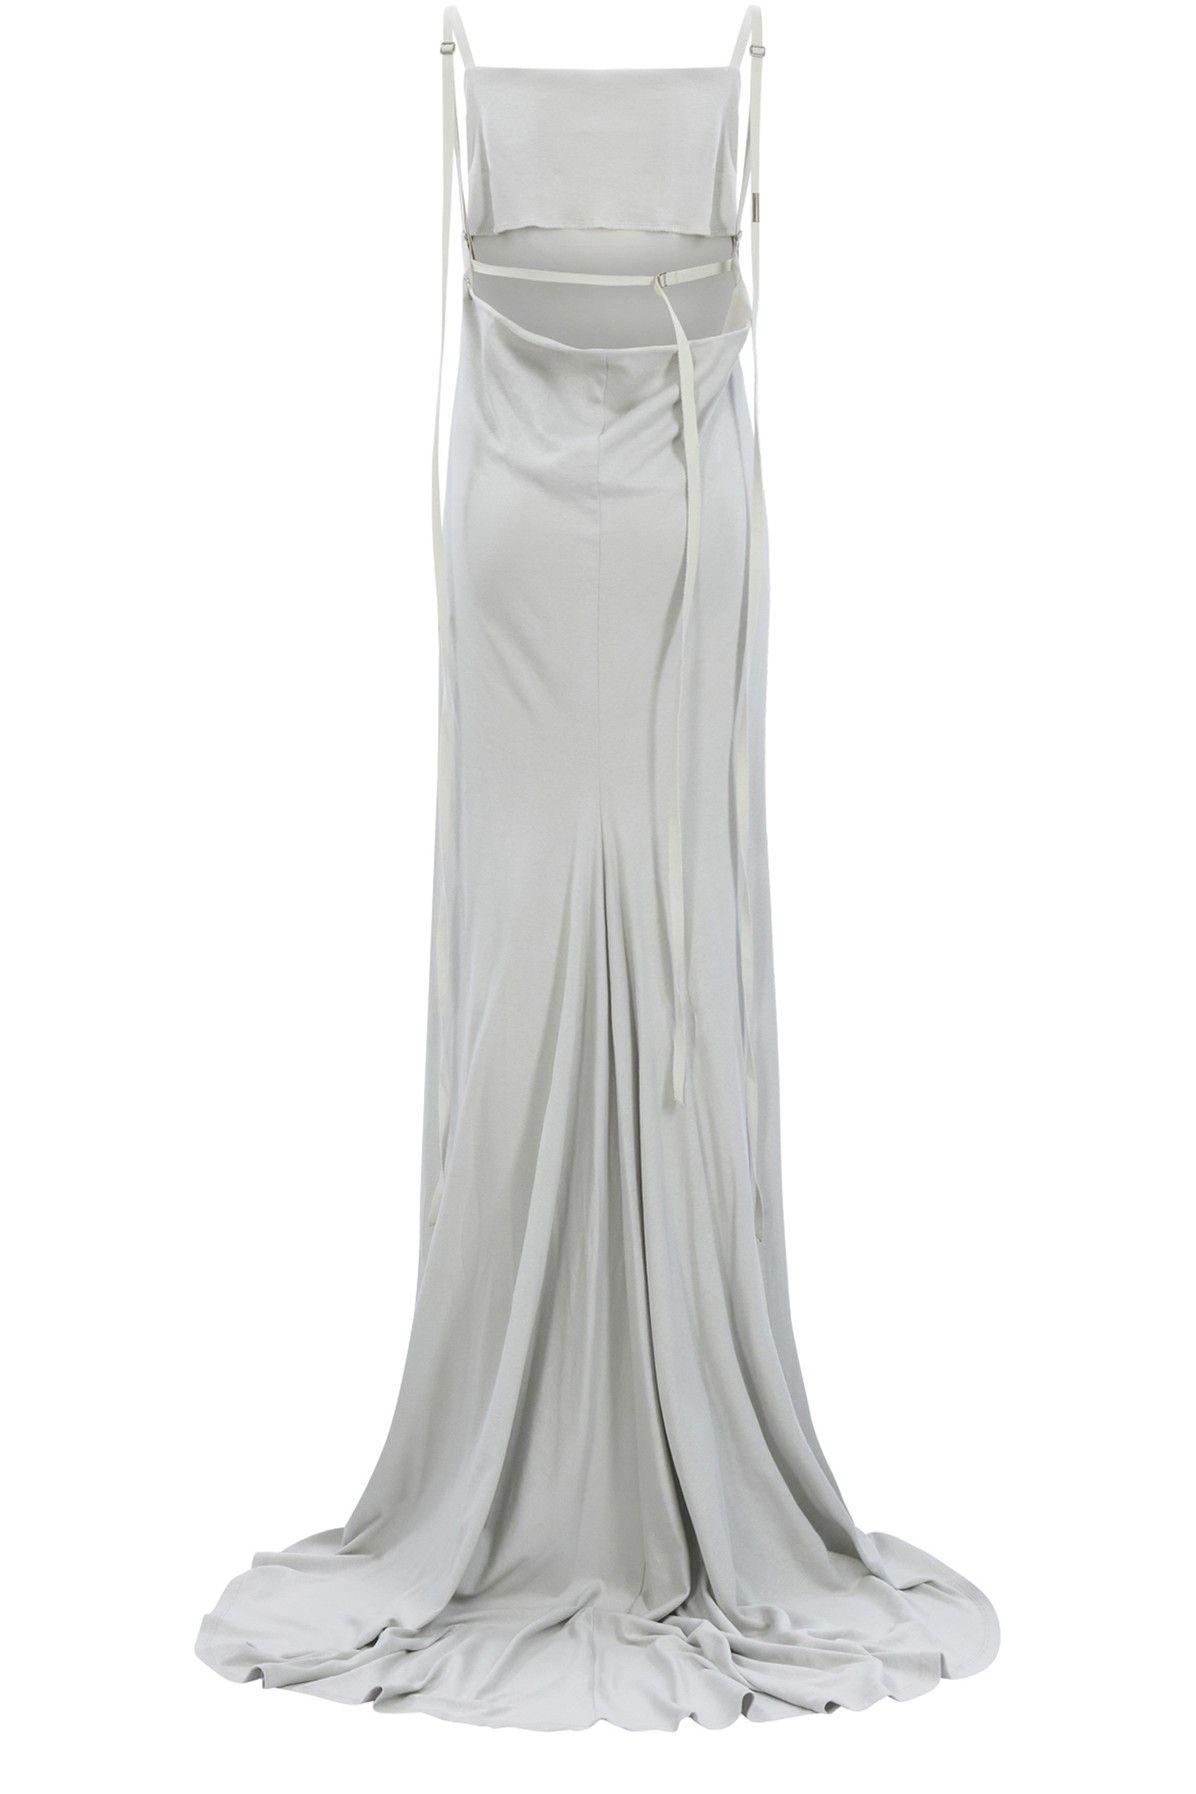 Ann Demeulemeester Hortense Long Slip Dress in White | Lyst